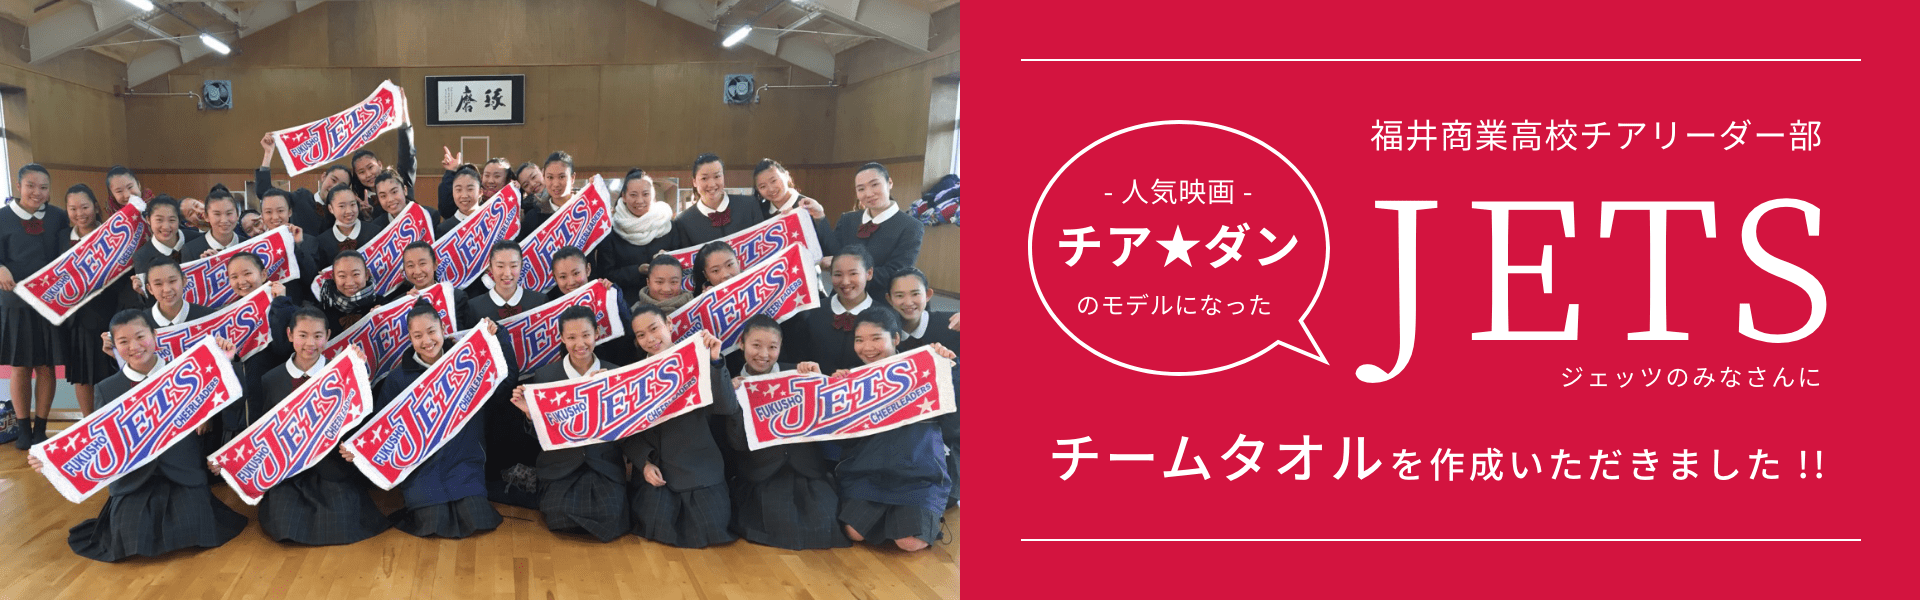 福井商業高校チアリーダー部 JETS(ジェッツ)のみなさんにチームタオルを作成いただきました!!